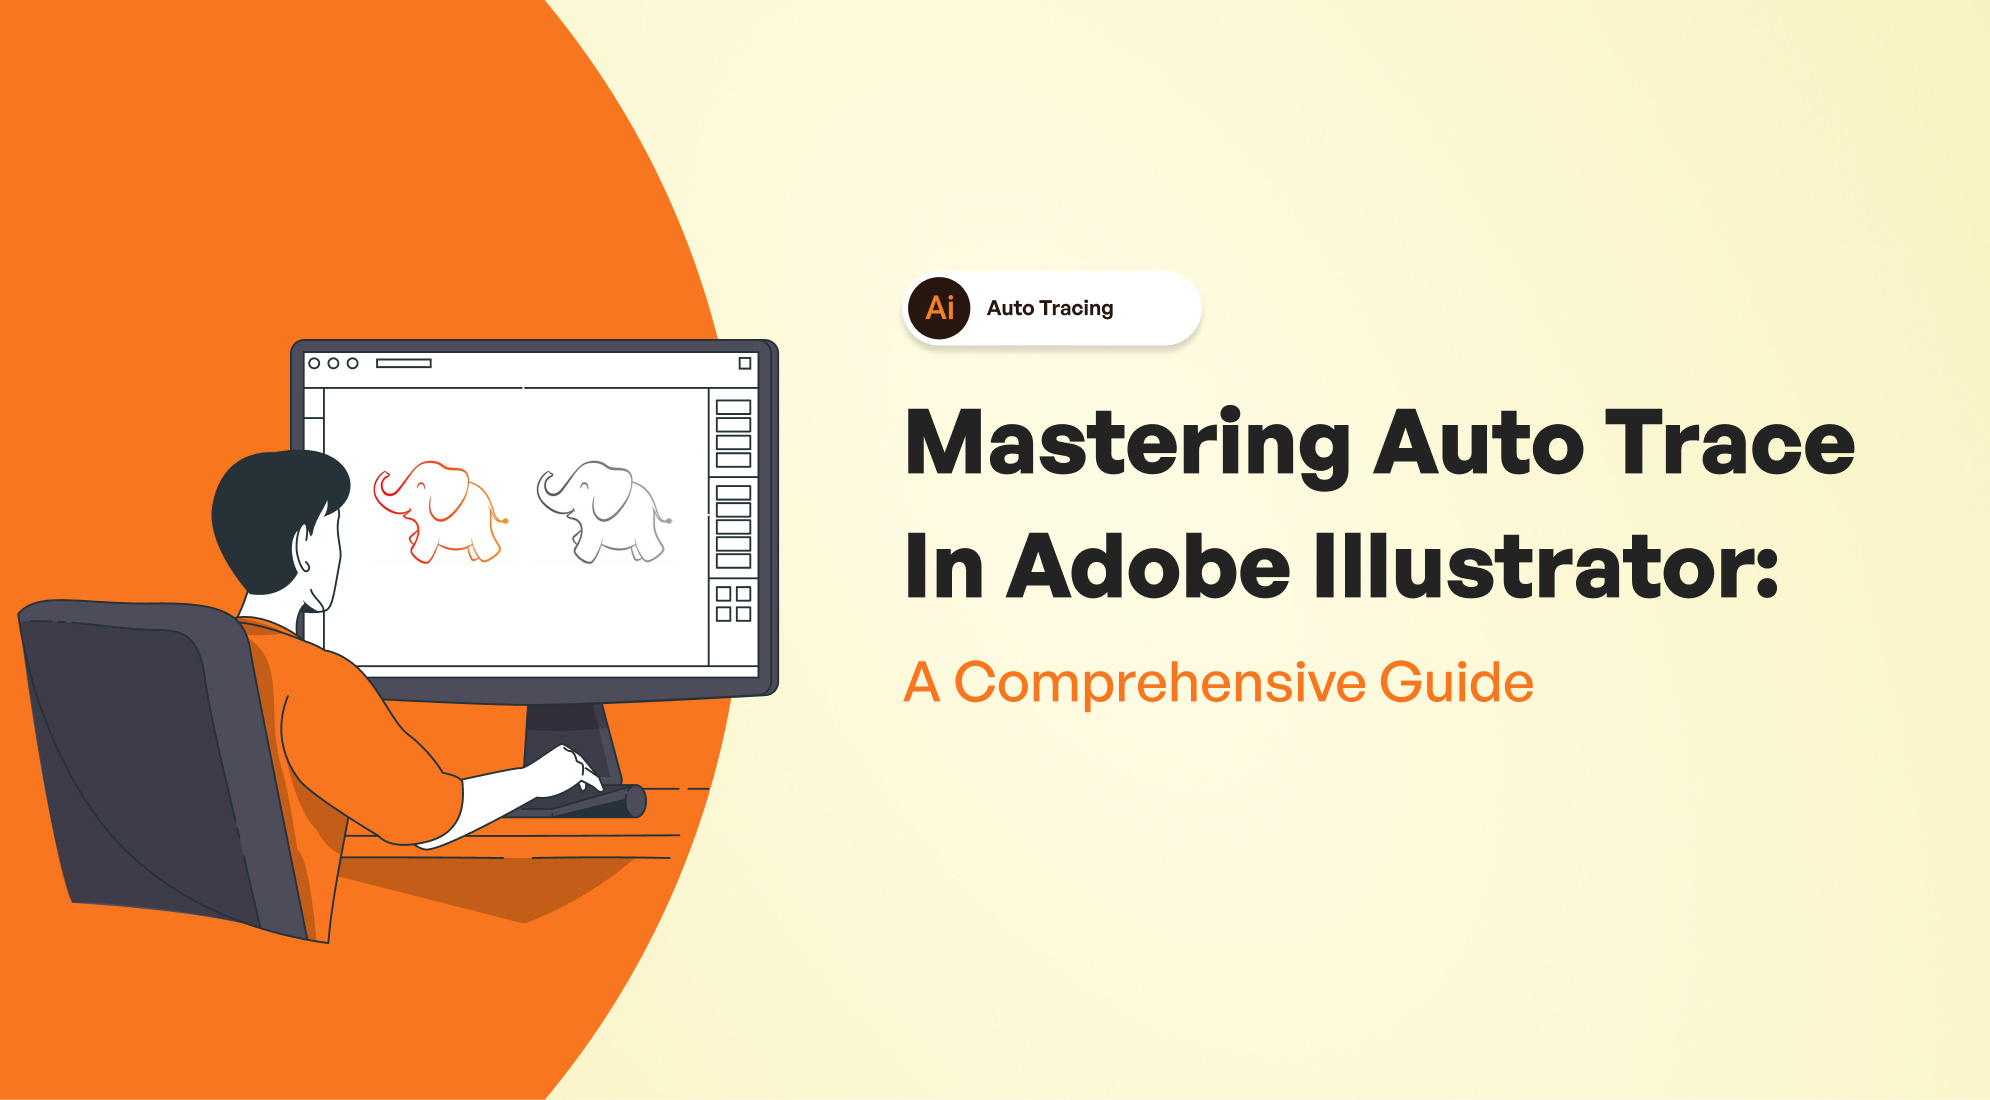 Mastering Auto Trace in Adobe Illustrator: A Comprehensive Guide